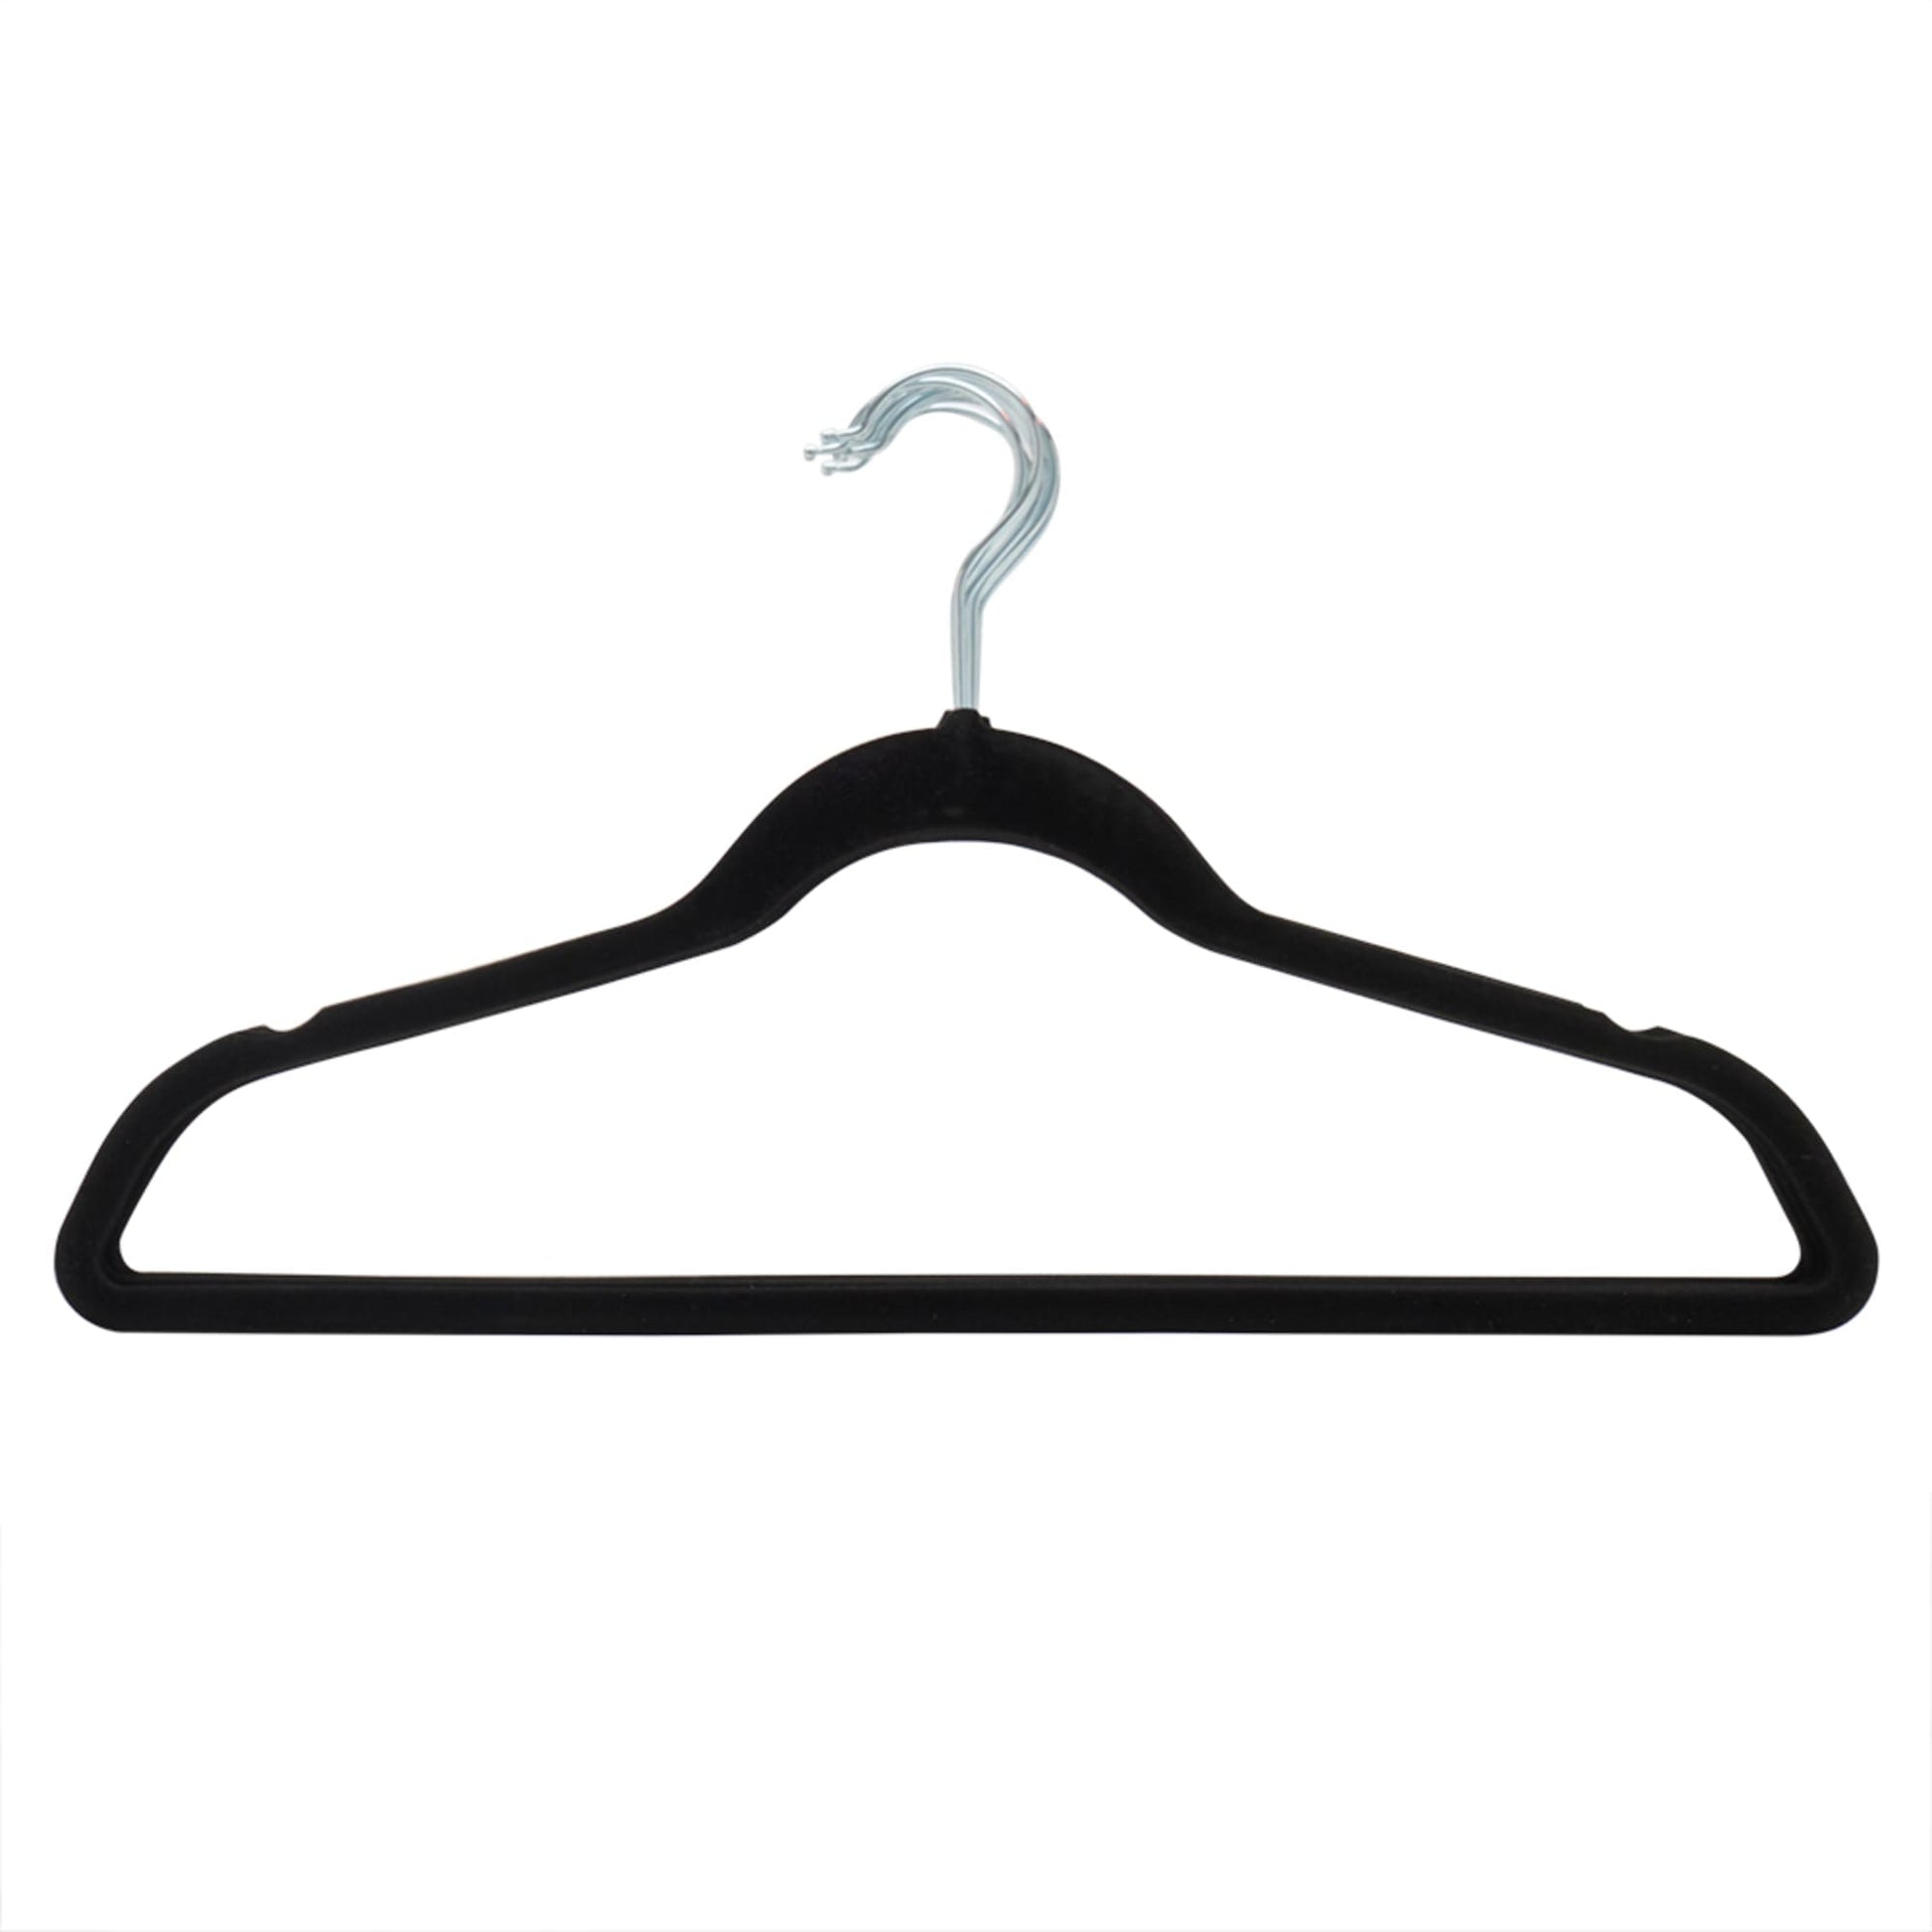 Sunbeam 10-Pack Velvet Hanger, Black, Hangers